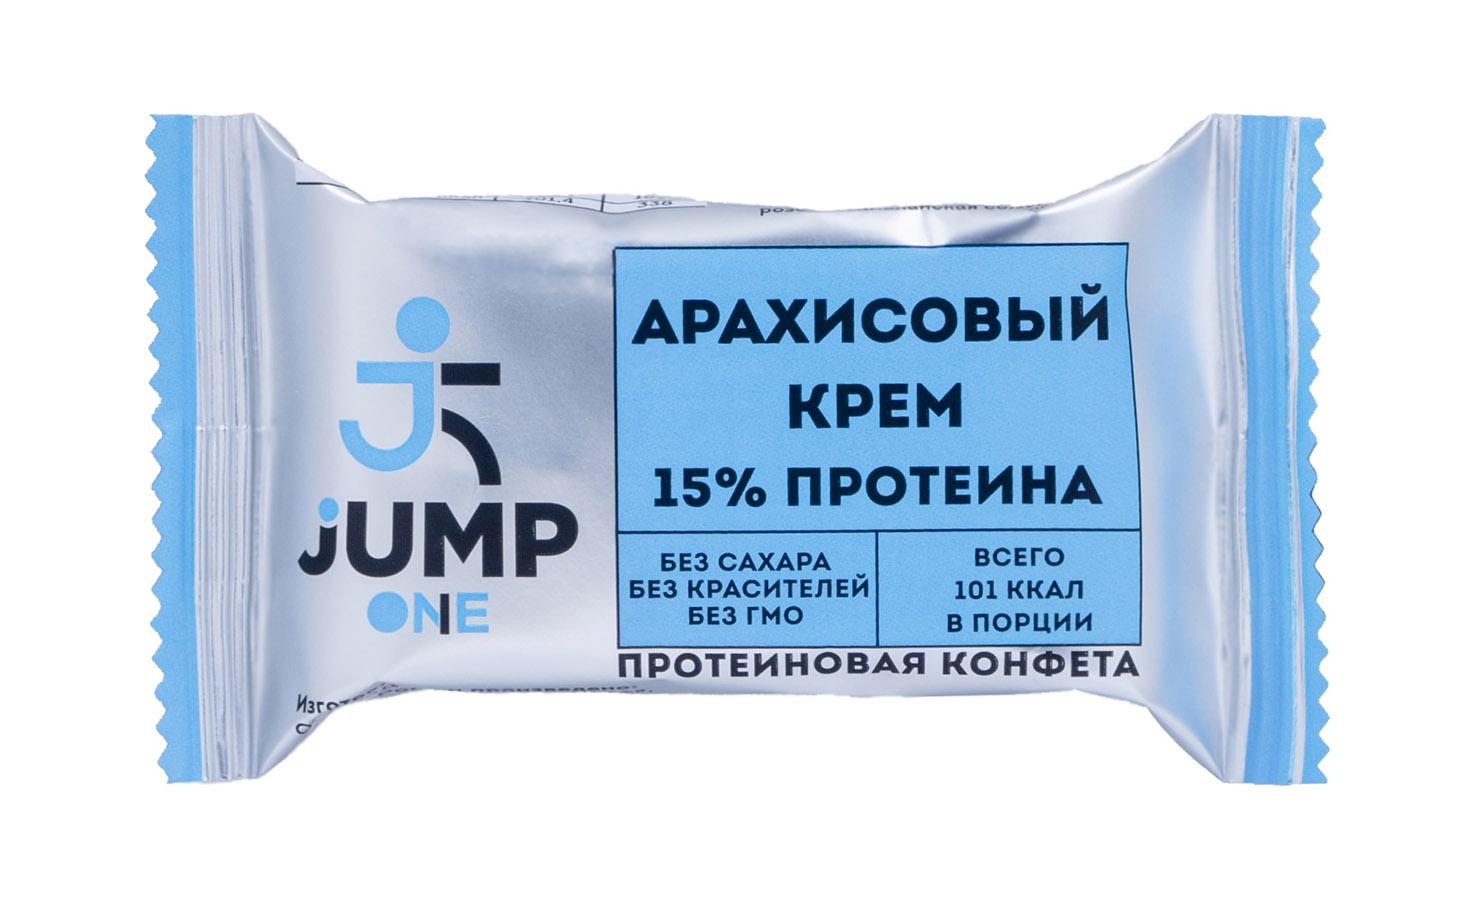 Конфета Jump one орехово-фруктовая со вкусом Арахисовый крем 30 г